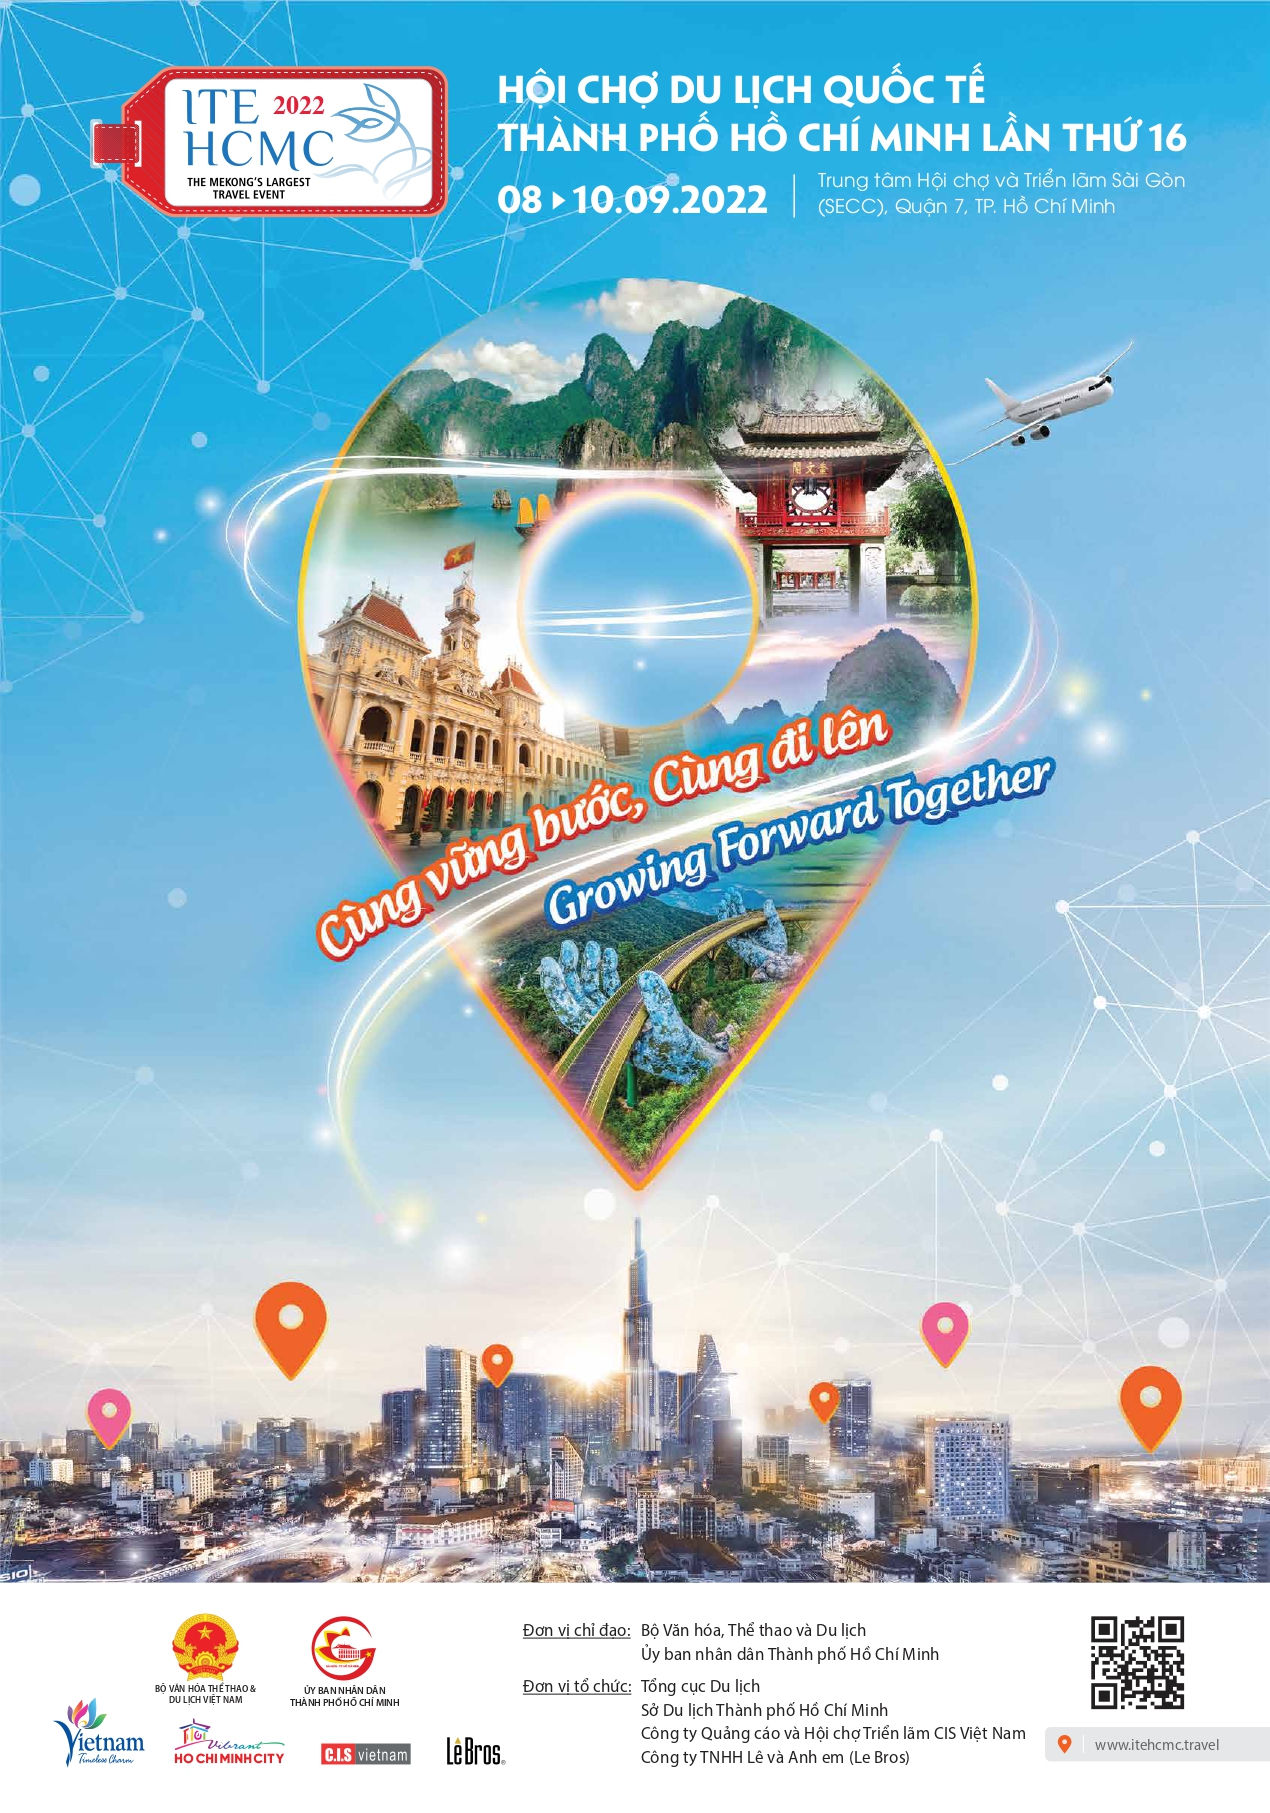 Thông cáo báo chí Hội chợ Du lịch Quốc tế Thành phố Hồ Chí Minh lần thứ 16 “ITE HCMC 2022 – Cùng vững bước, cùng đi lên”